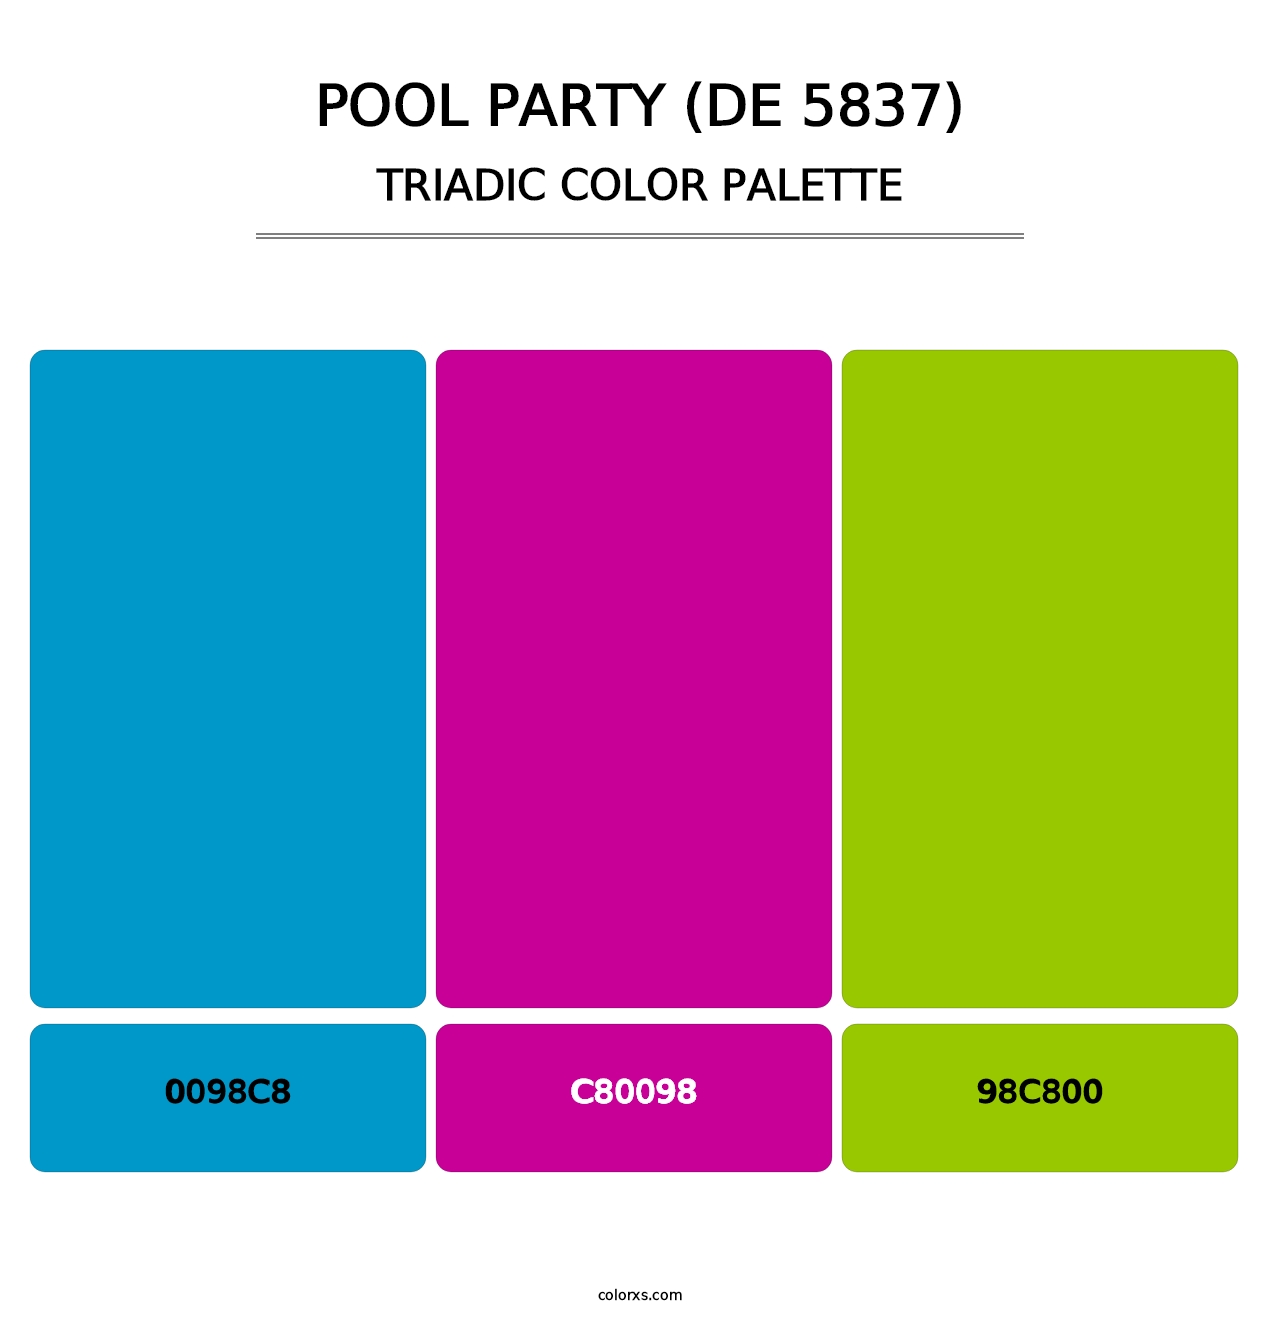 Pool Party (DE 5837) - Triadic Color Palette